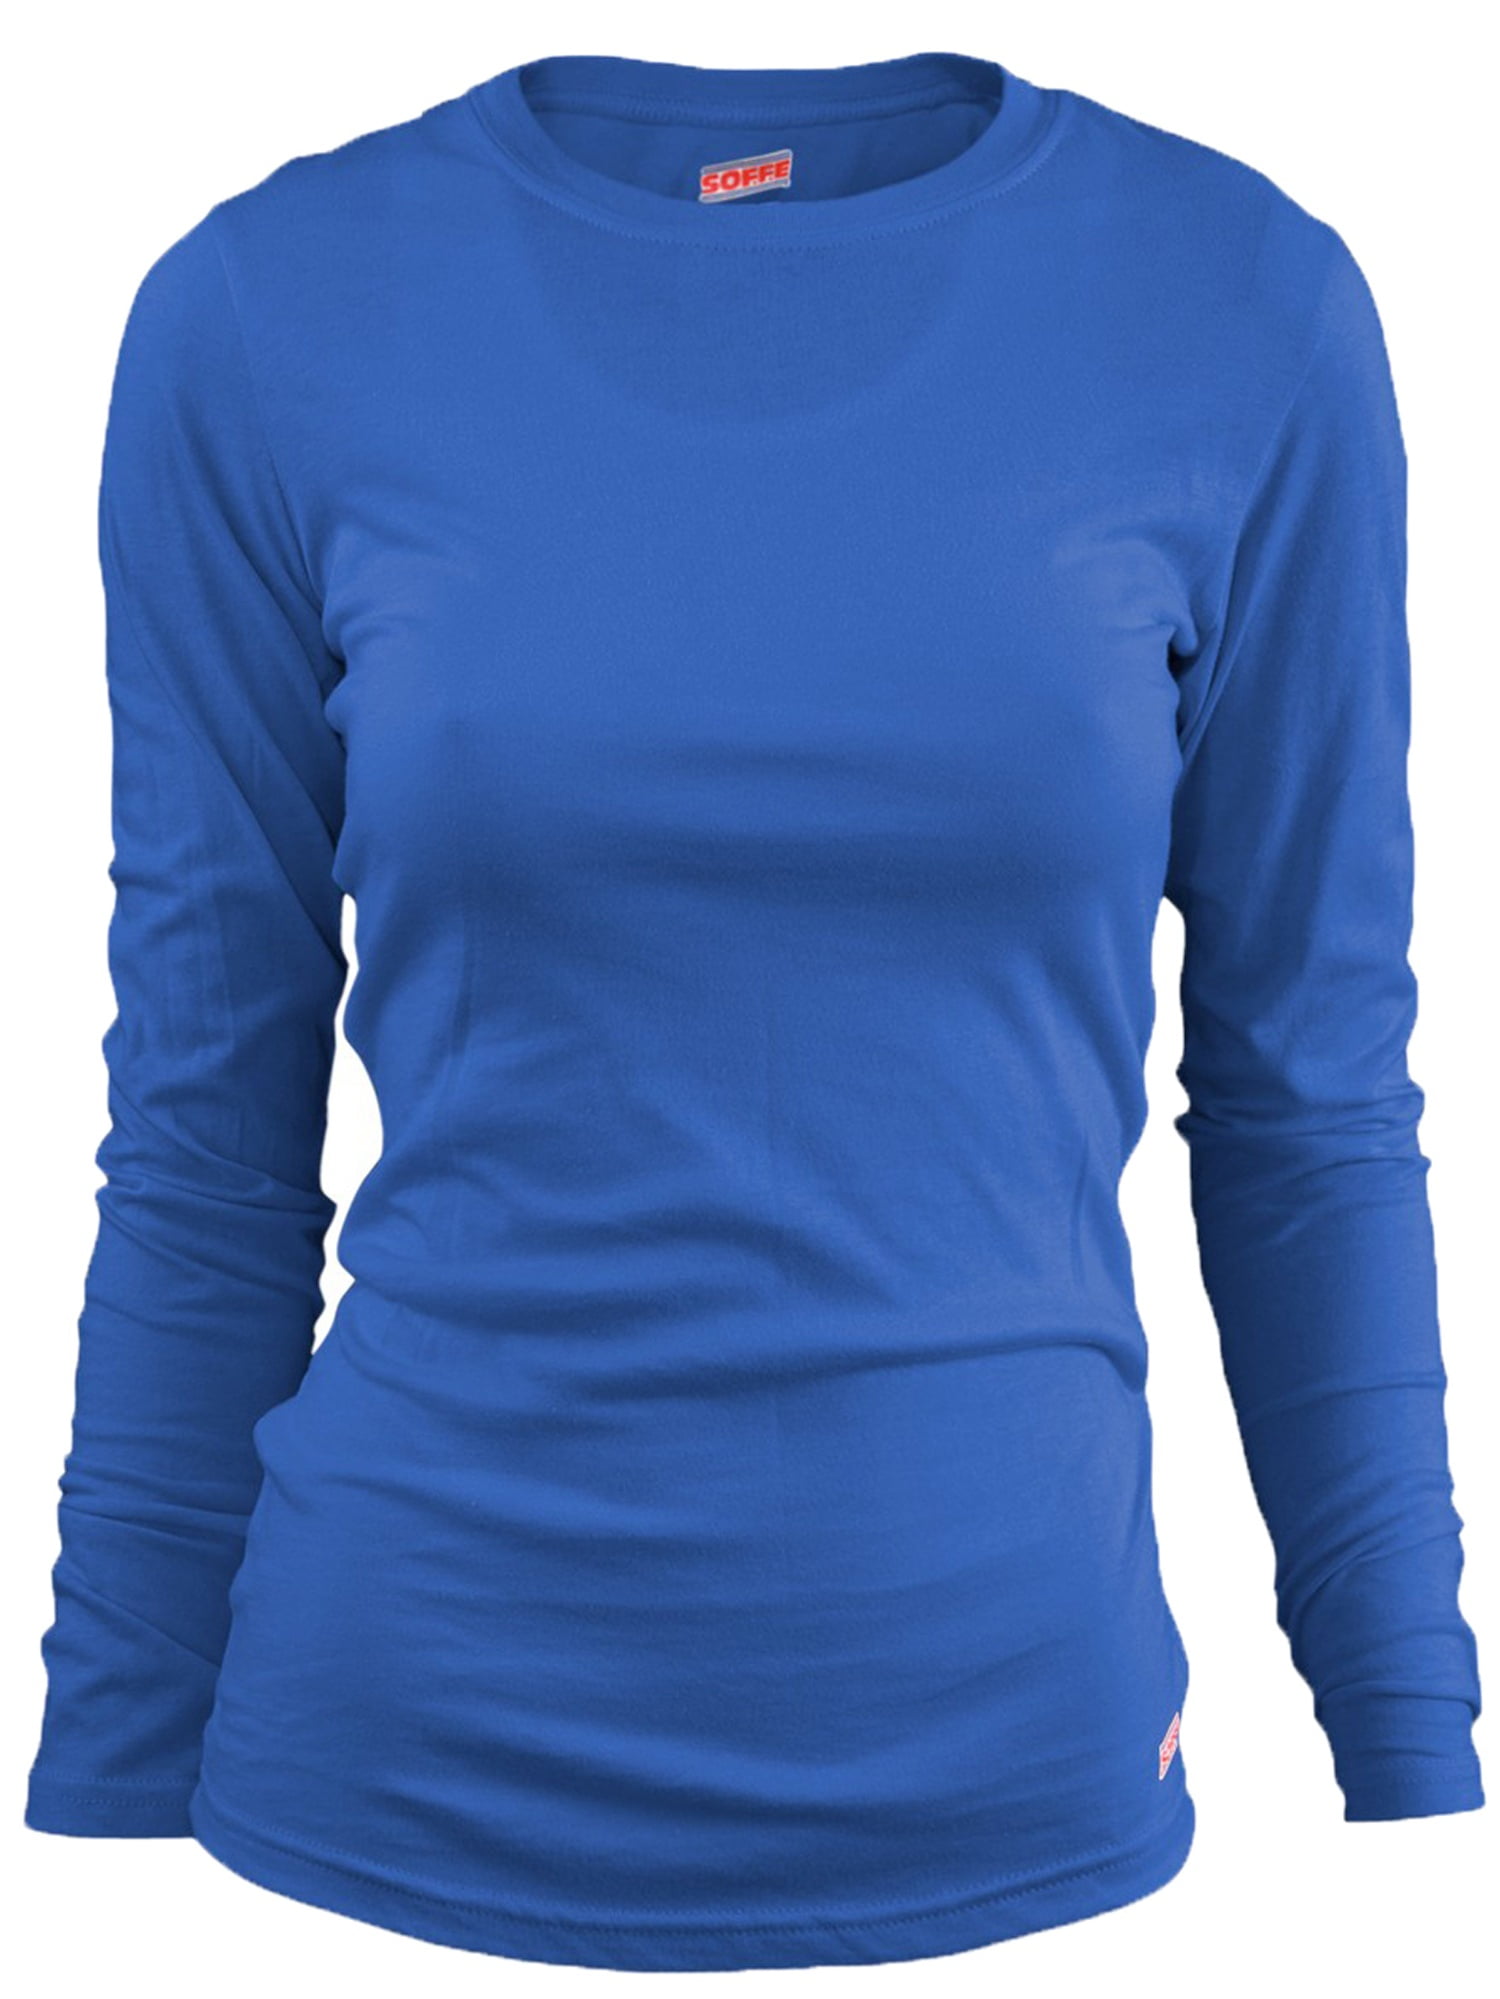 Soffe Long Sleeve Tissue T-Shirt - Walmart.com